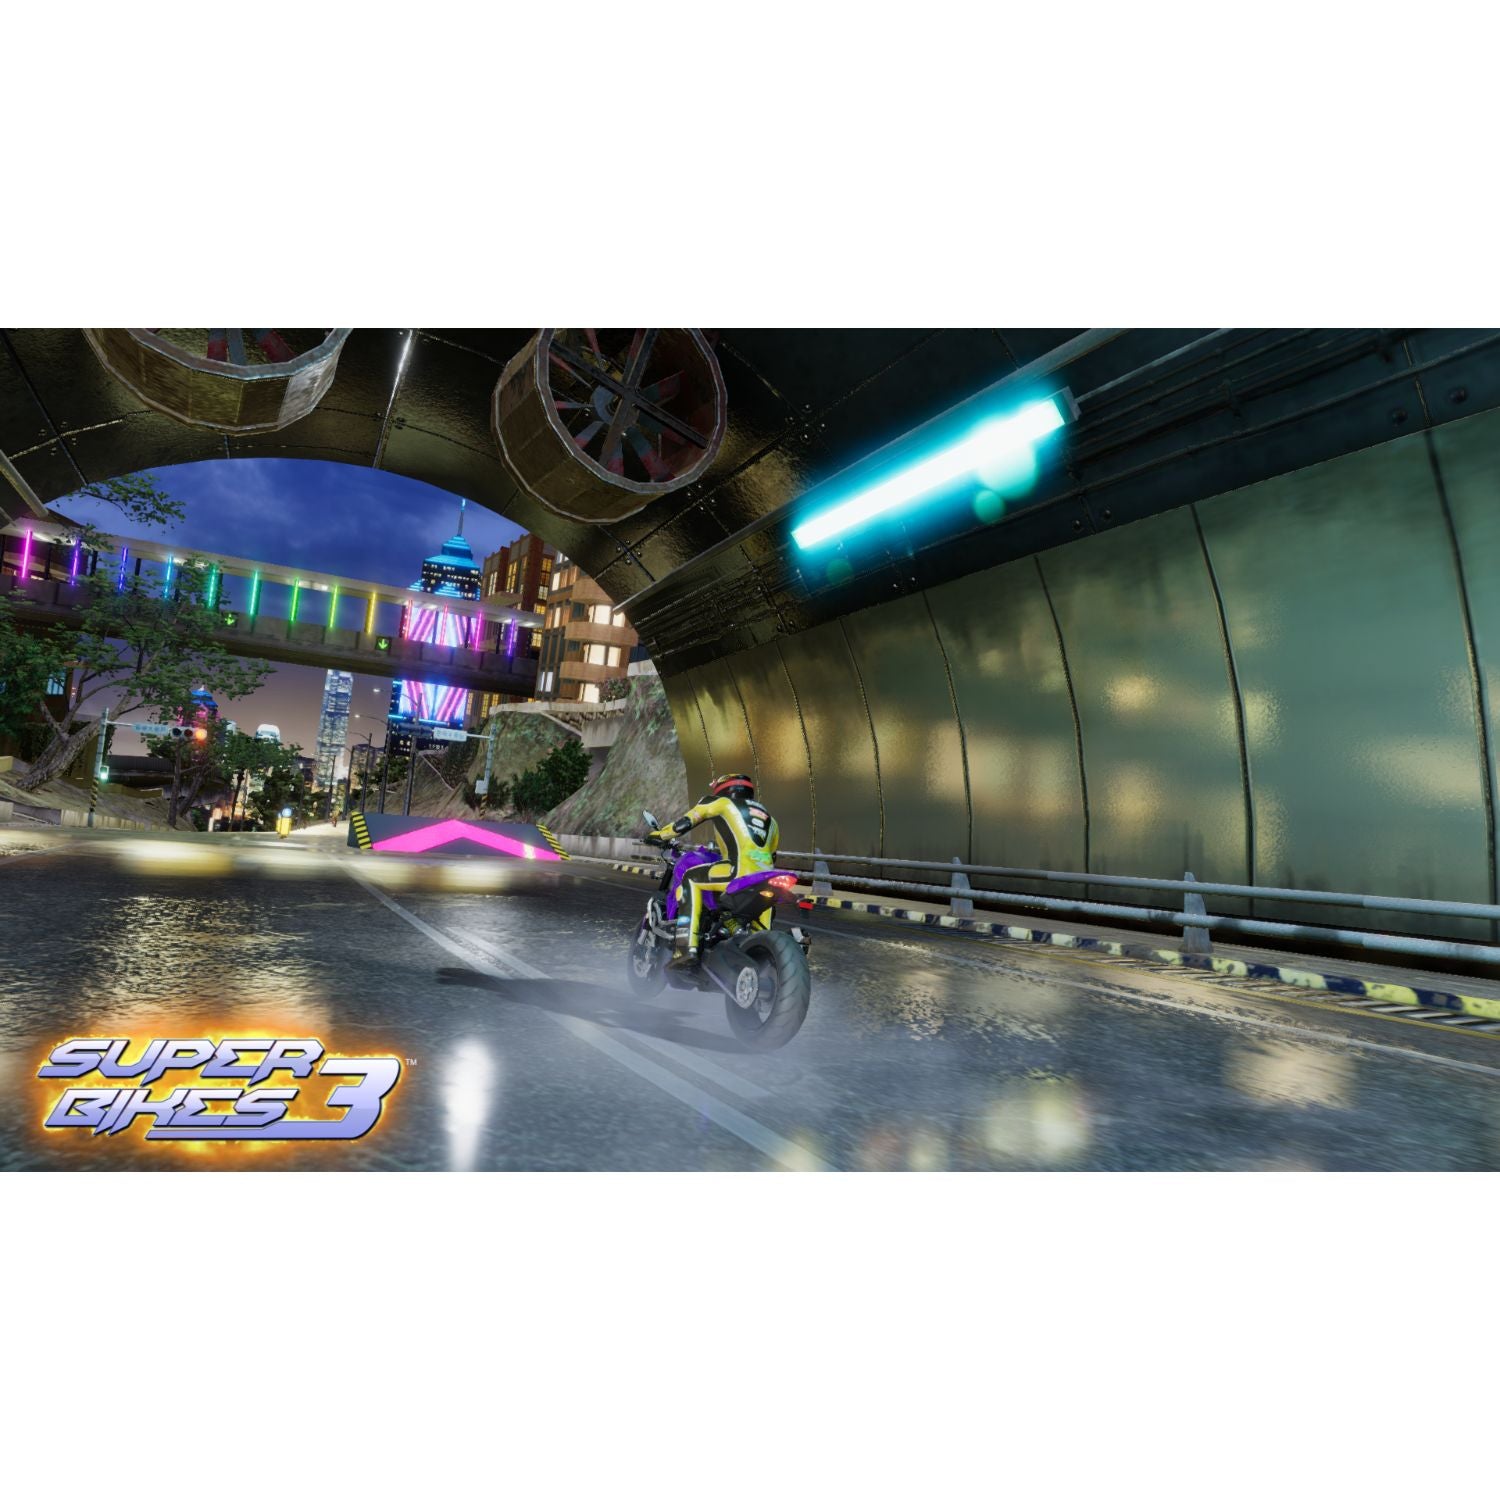 Raw Thrills Super Bikes 3 Arcade Game - Gaming Blaze